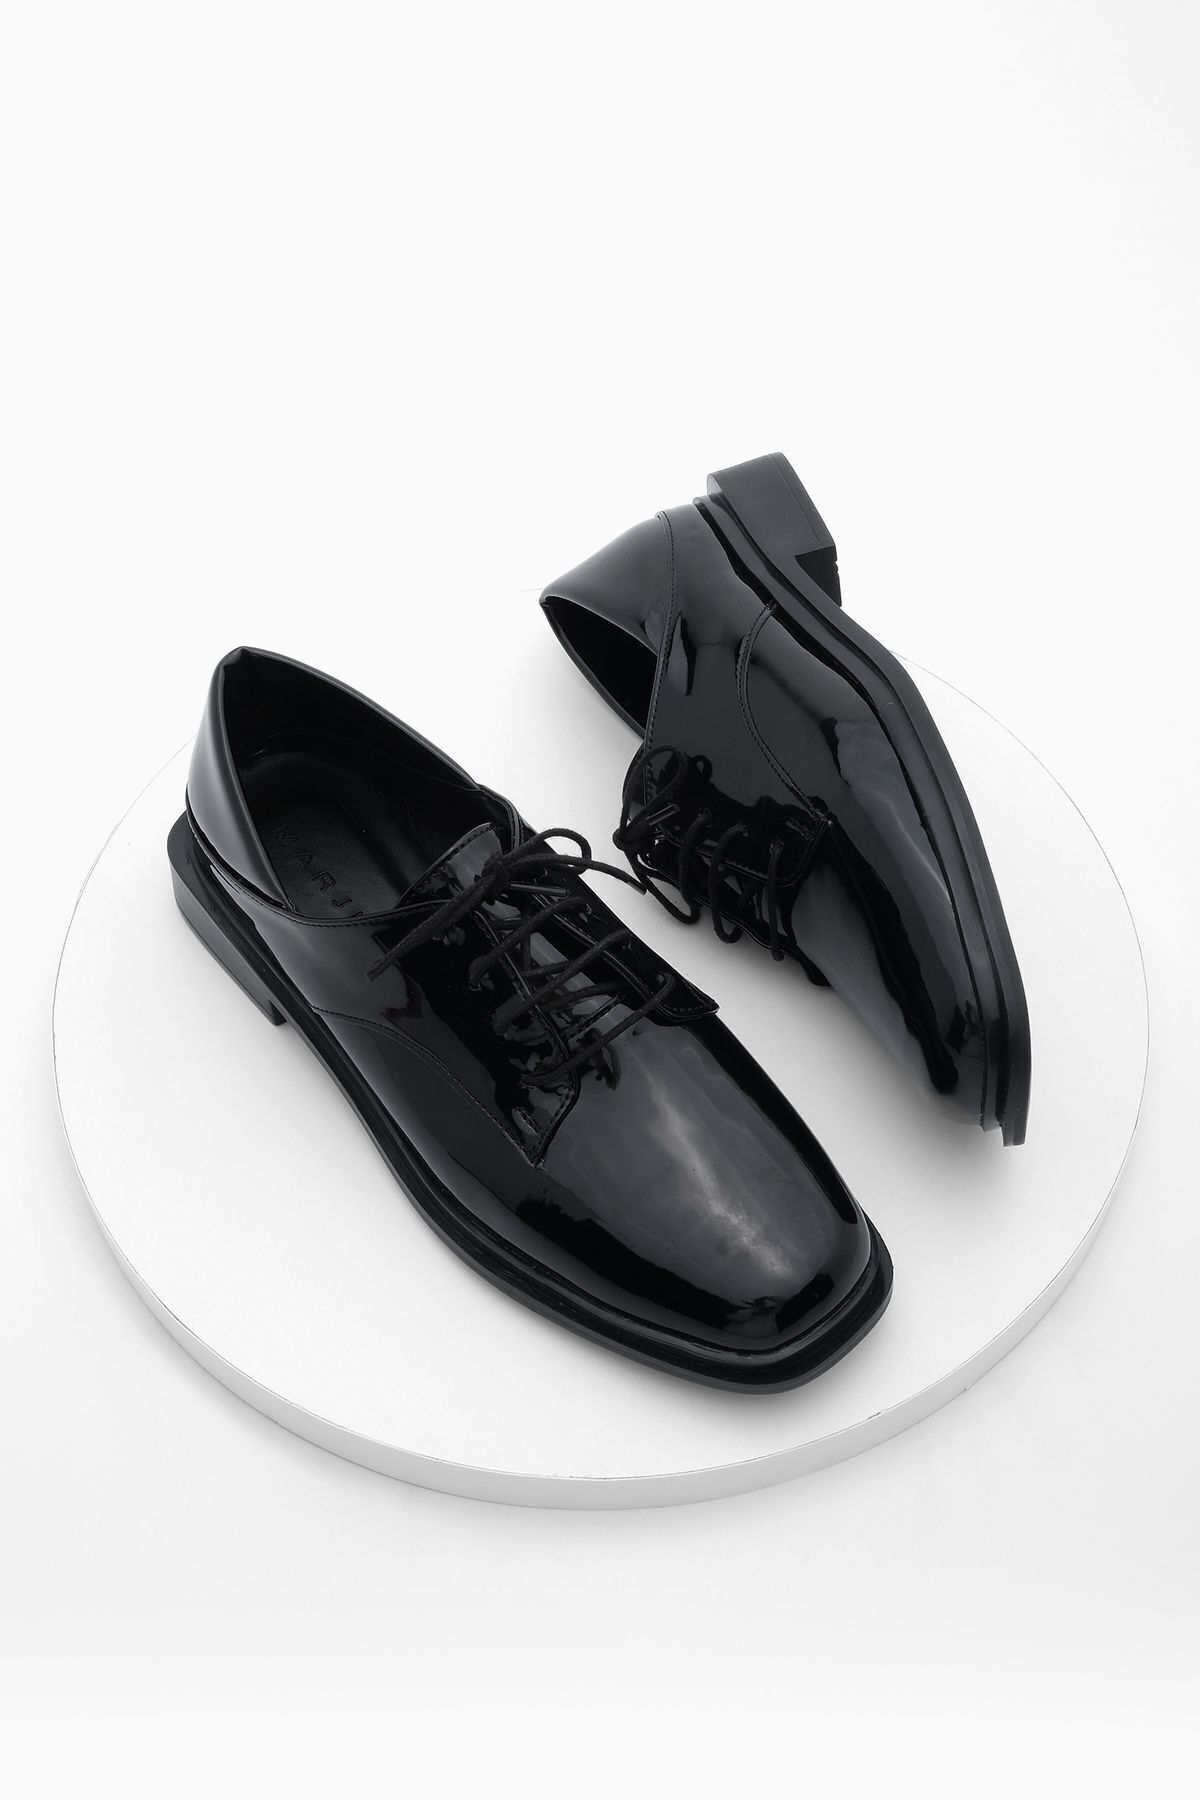 Marjin Kadın Oxford Ayakkabı Küt Burun Bağcıklı Maskülen Günlük Ayakkabı Rilen Siyah Rugan